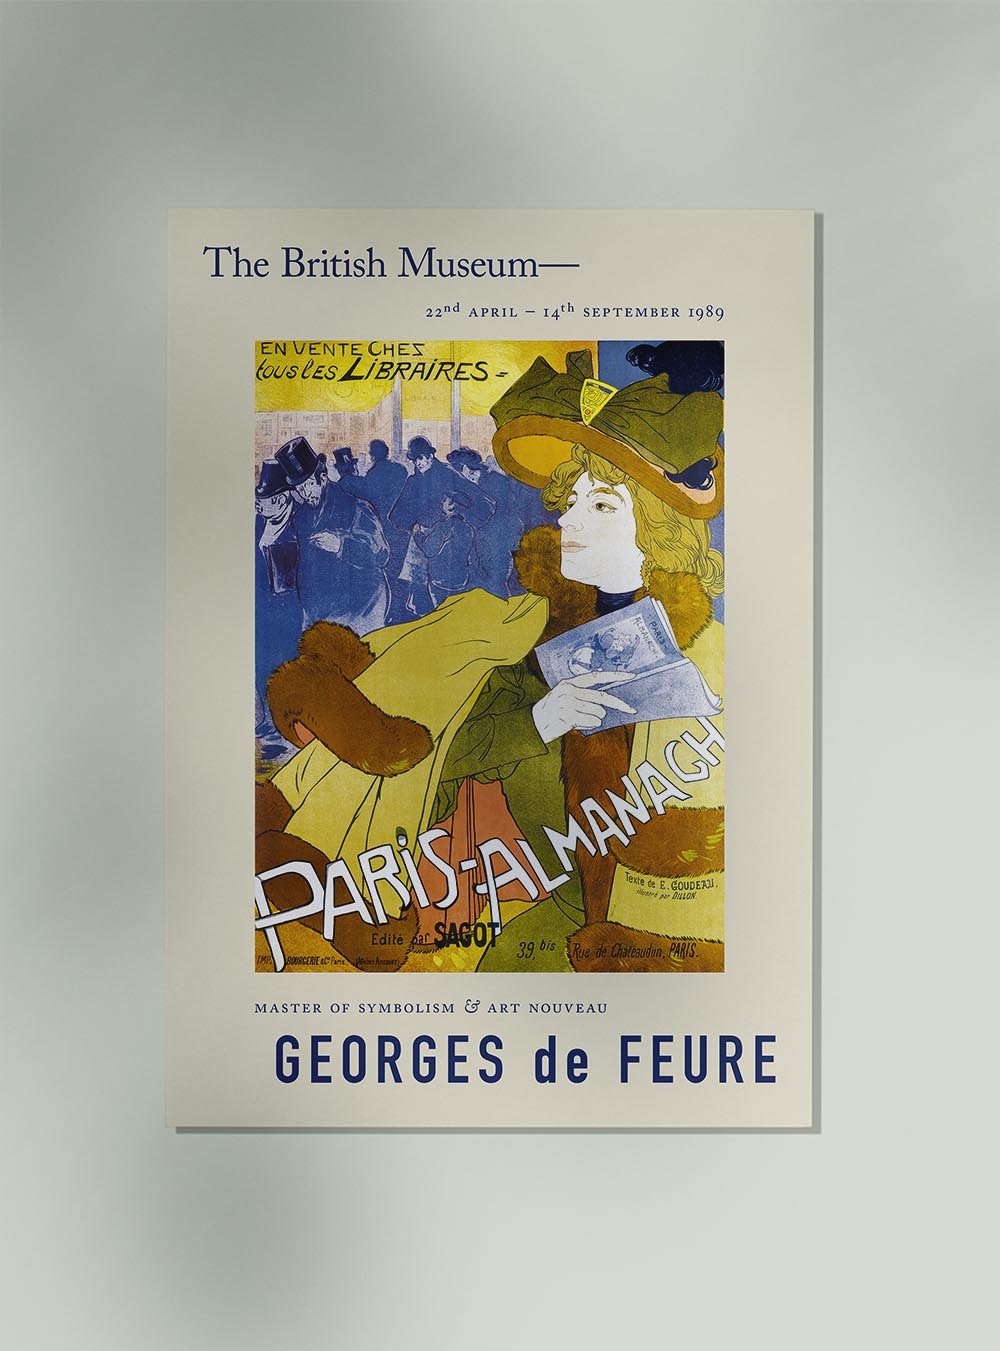 Georges de Feure Paris Almanach Exhibition Poster